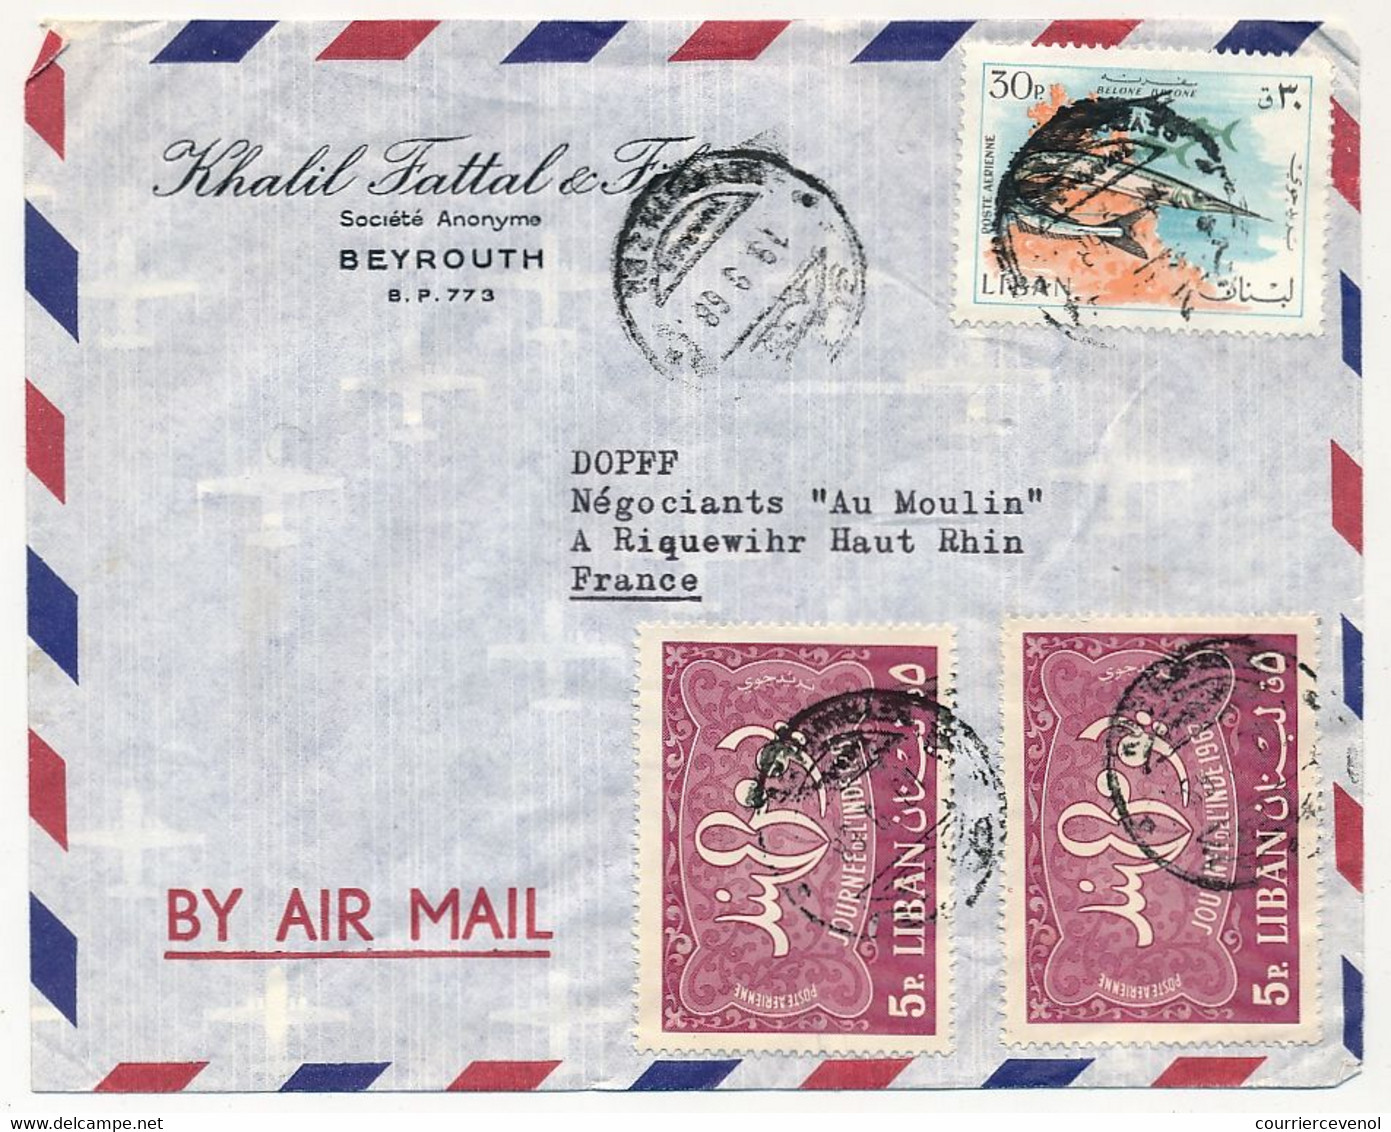 LIBAN - 2 Enveloppes Affr. Composé - 1968 Pour France - En Tête Khalil Fattal Et Fils - Beyrouth - Libanon